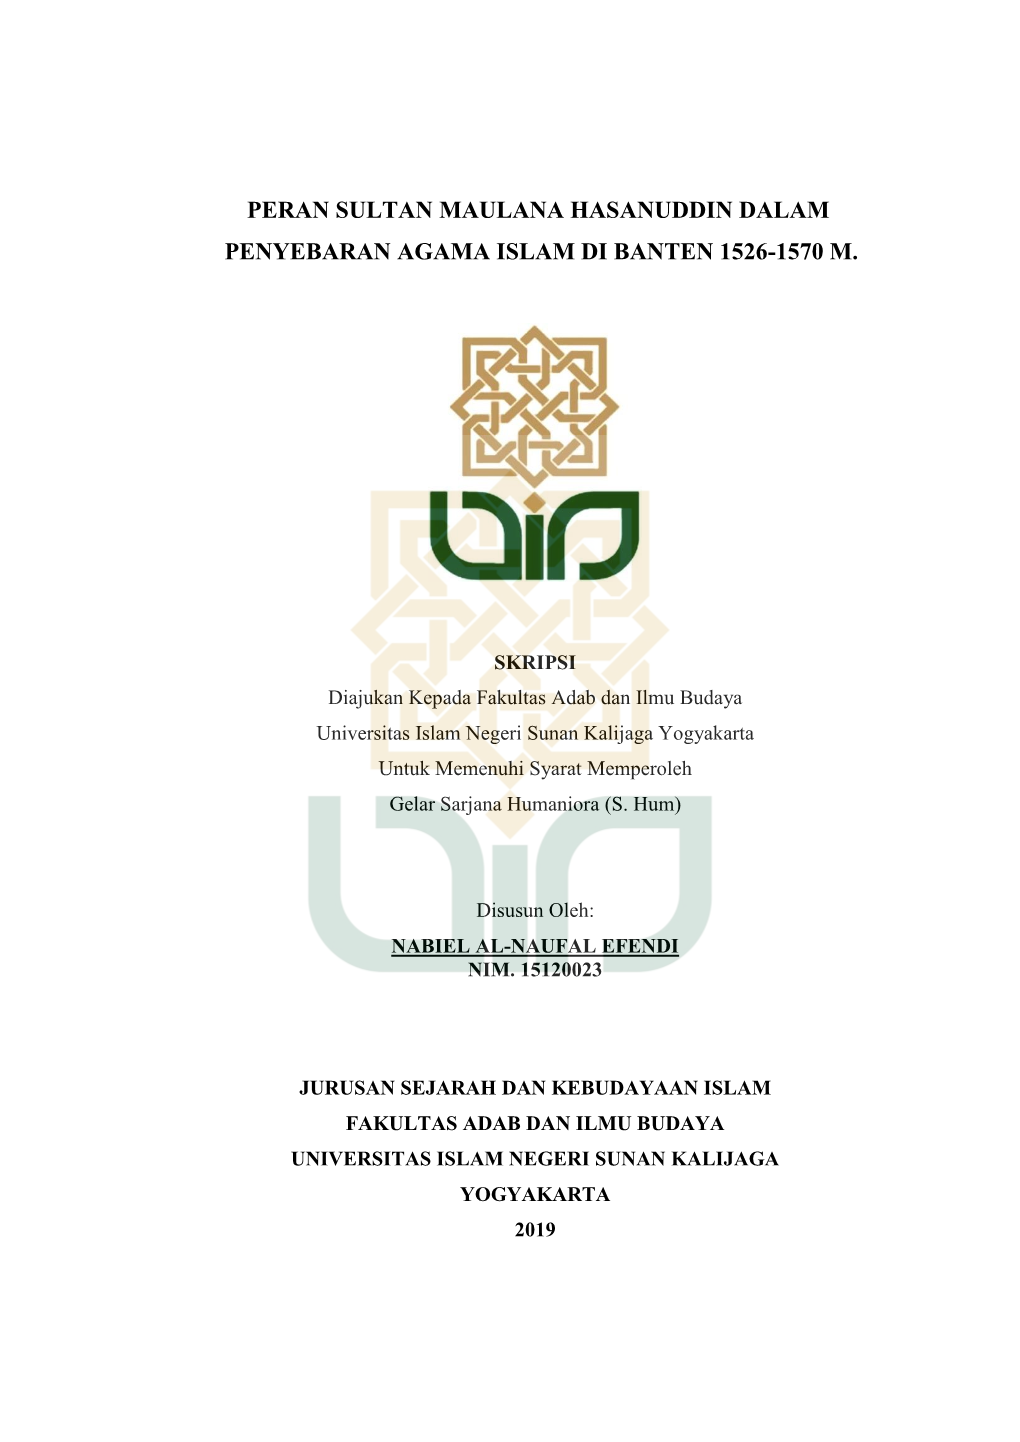 Peran Sultan Maulana Hasanuddin Dalam Penyebaran Agama Islam Di Banten 1526-1570 M